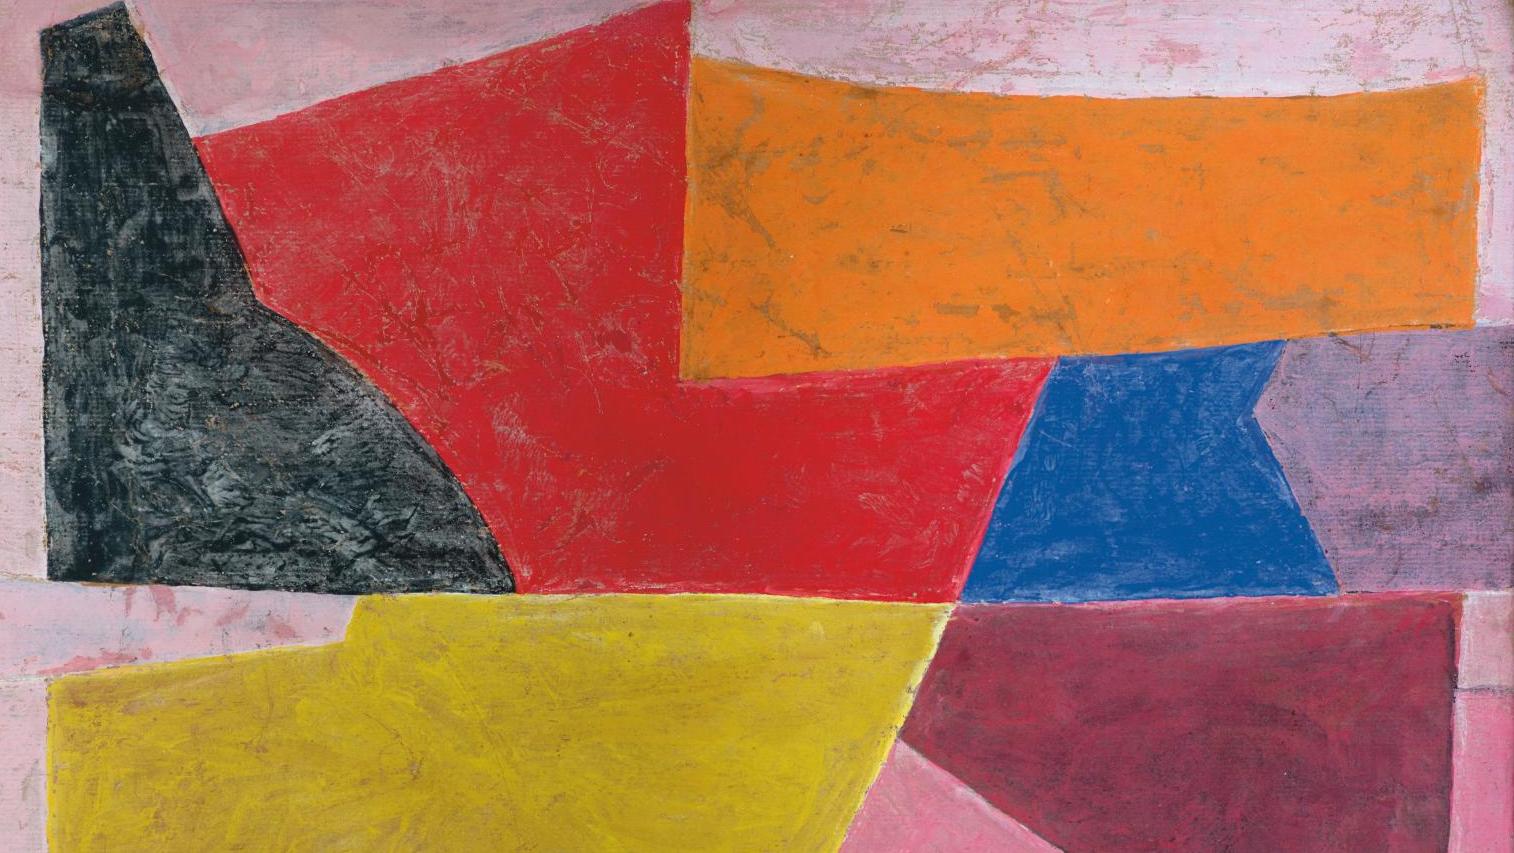 Serge Poliakoff (1900-1969), Rose rouge bleu noir, 1951, gouache sur papier marouflé... Les harmonies colorées et musicales de Poliakoff